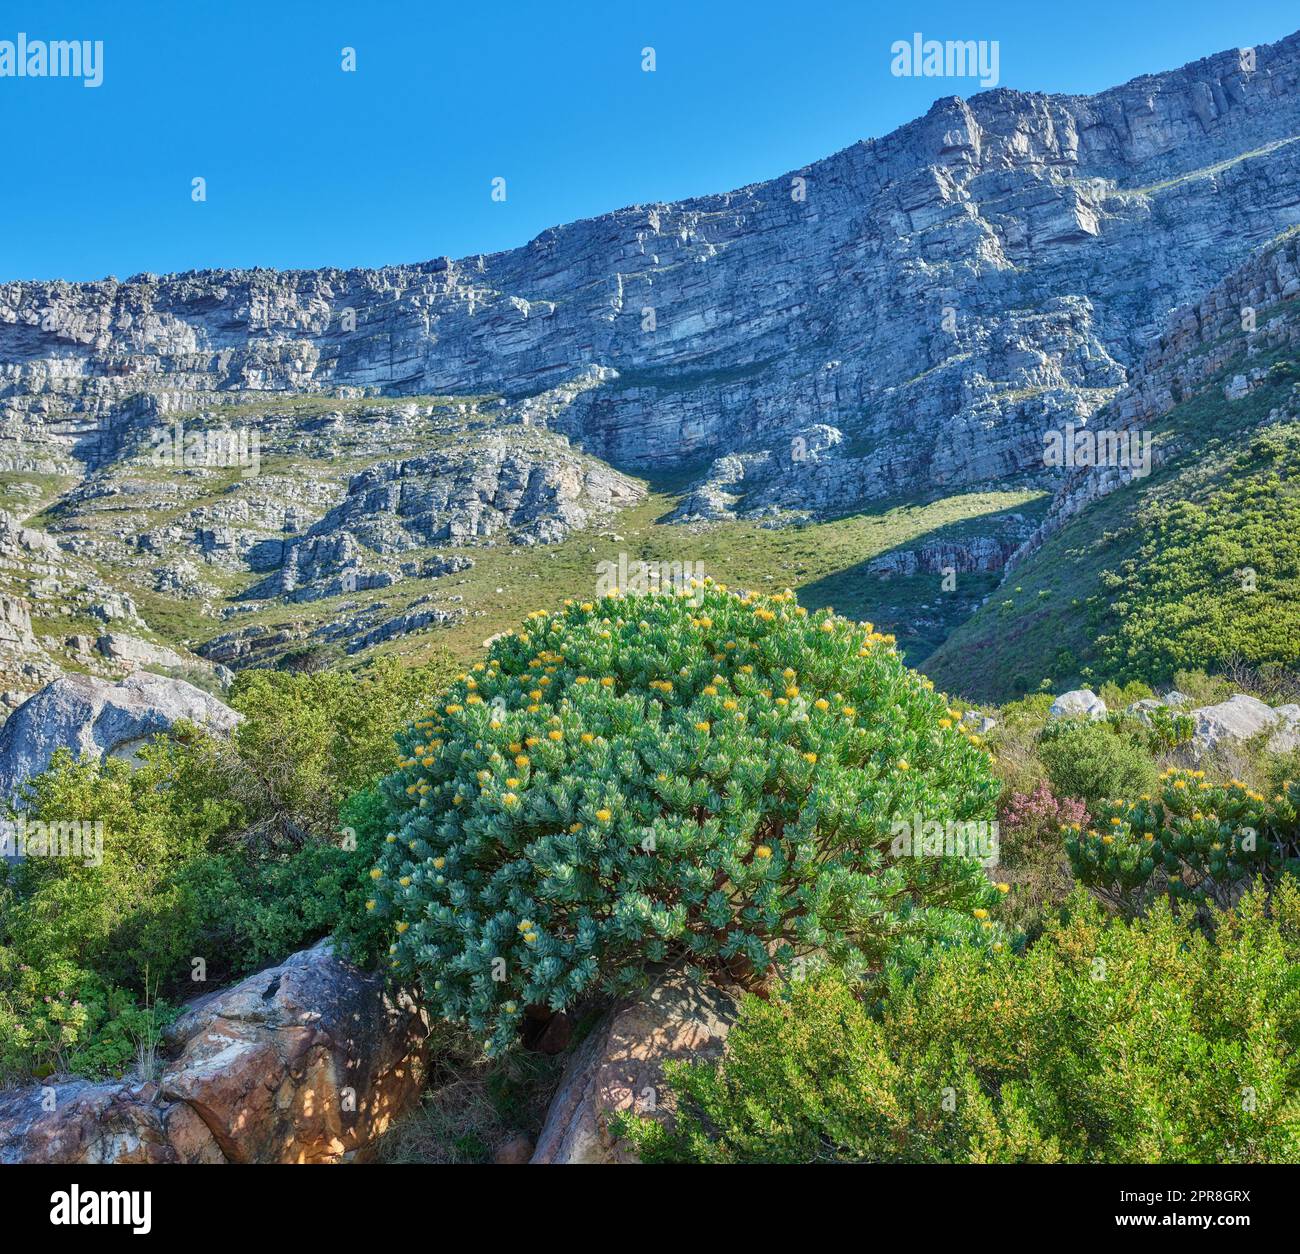 Wunderschöne Landschaft des Tafelbergs mit leuchtend grünen Pflanzen und blauem Himmelshintergrund. Friedlicher und malerischer Blick auf einen Gipfel oder Gipfel mit üppigem Laub in der Natur an einem Sommertag Stockfoto